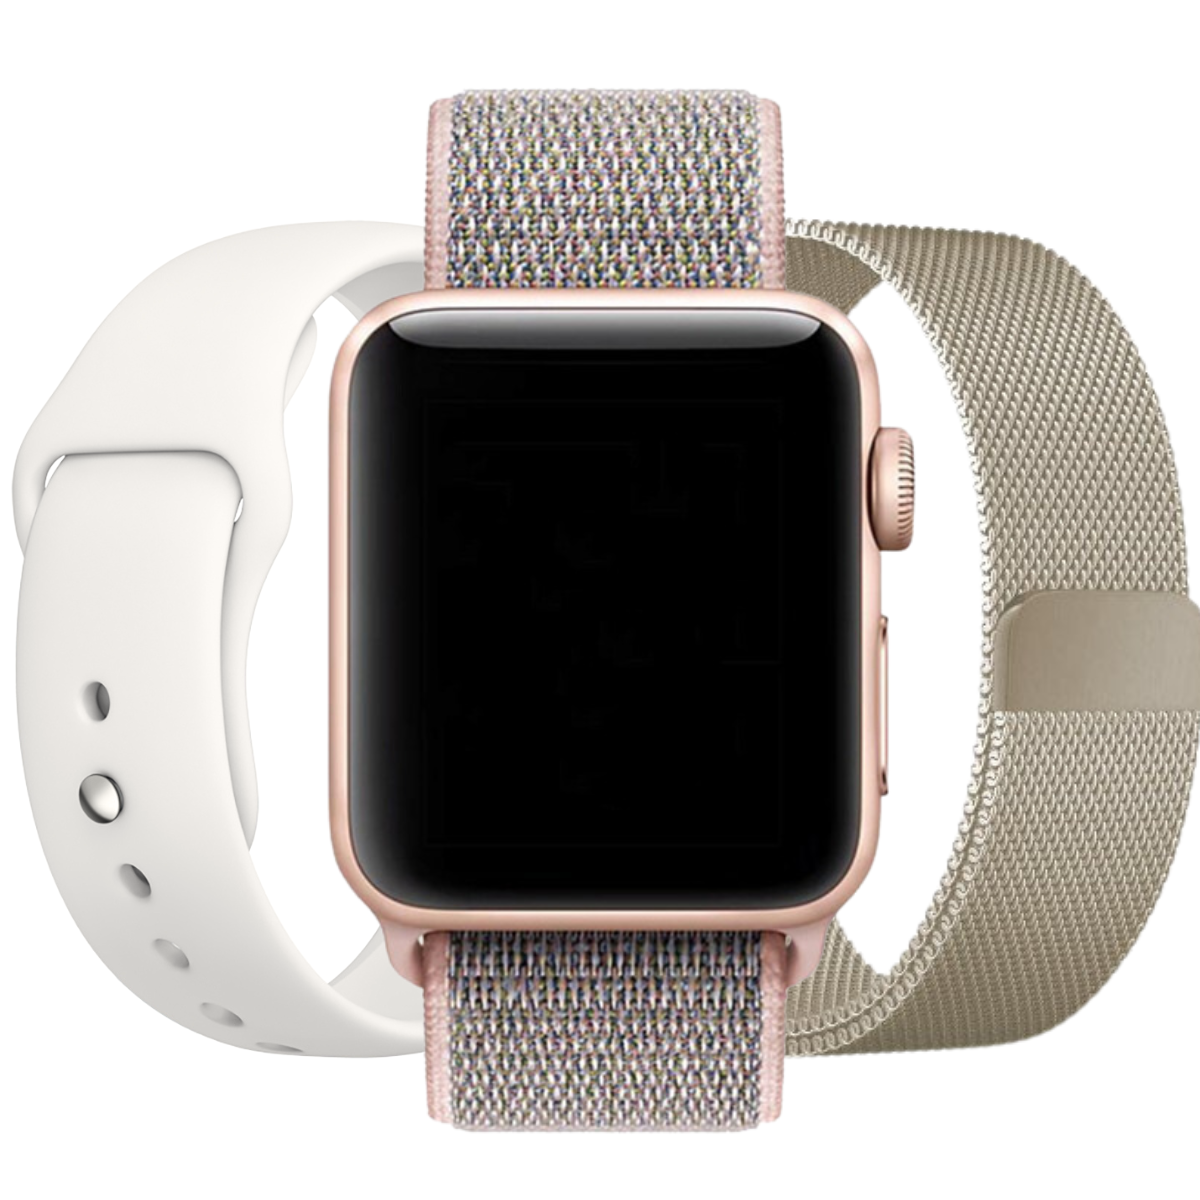 Ladies Apple Watch bundle deal - 3x